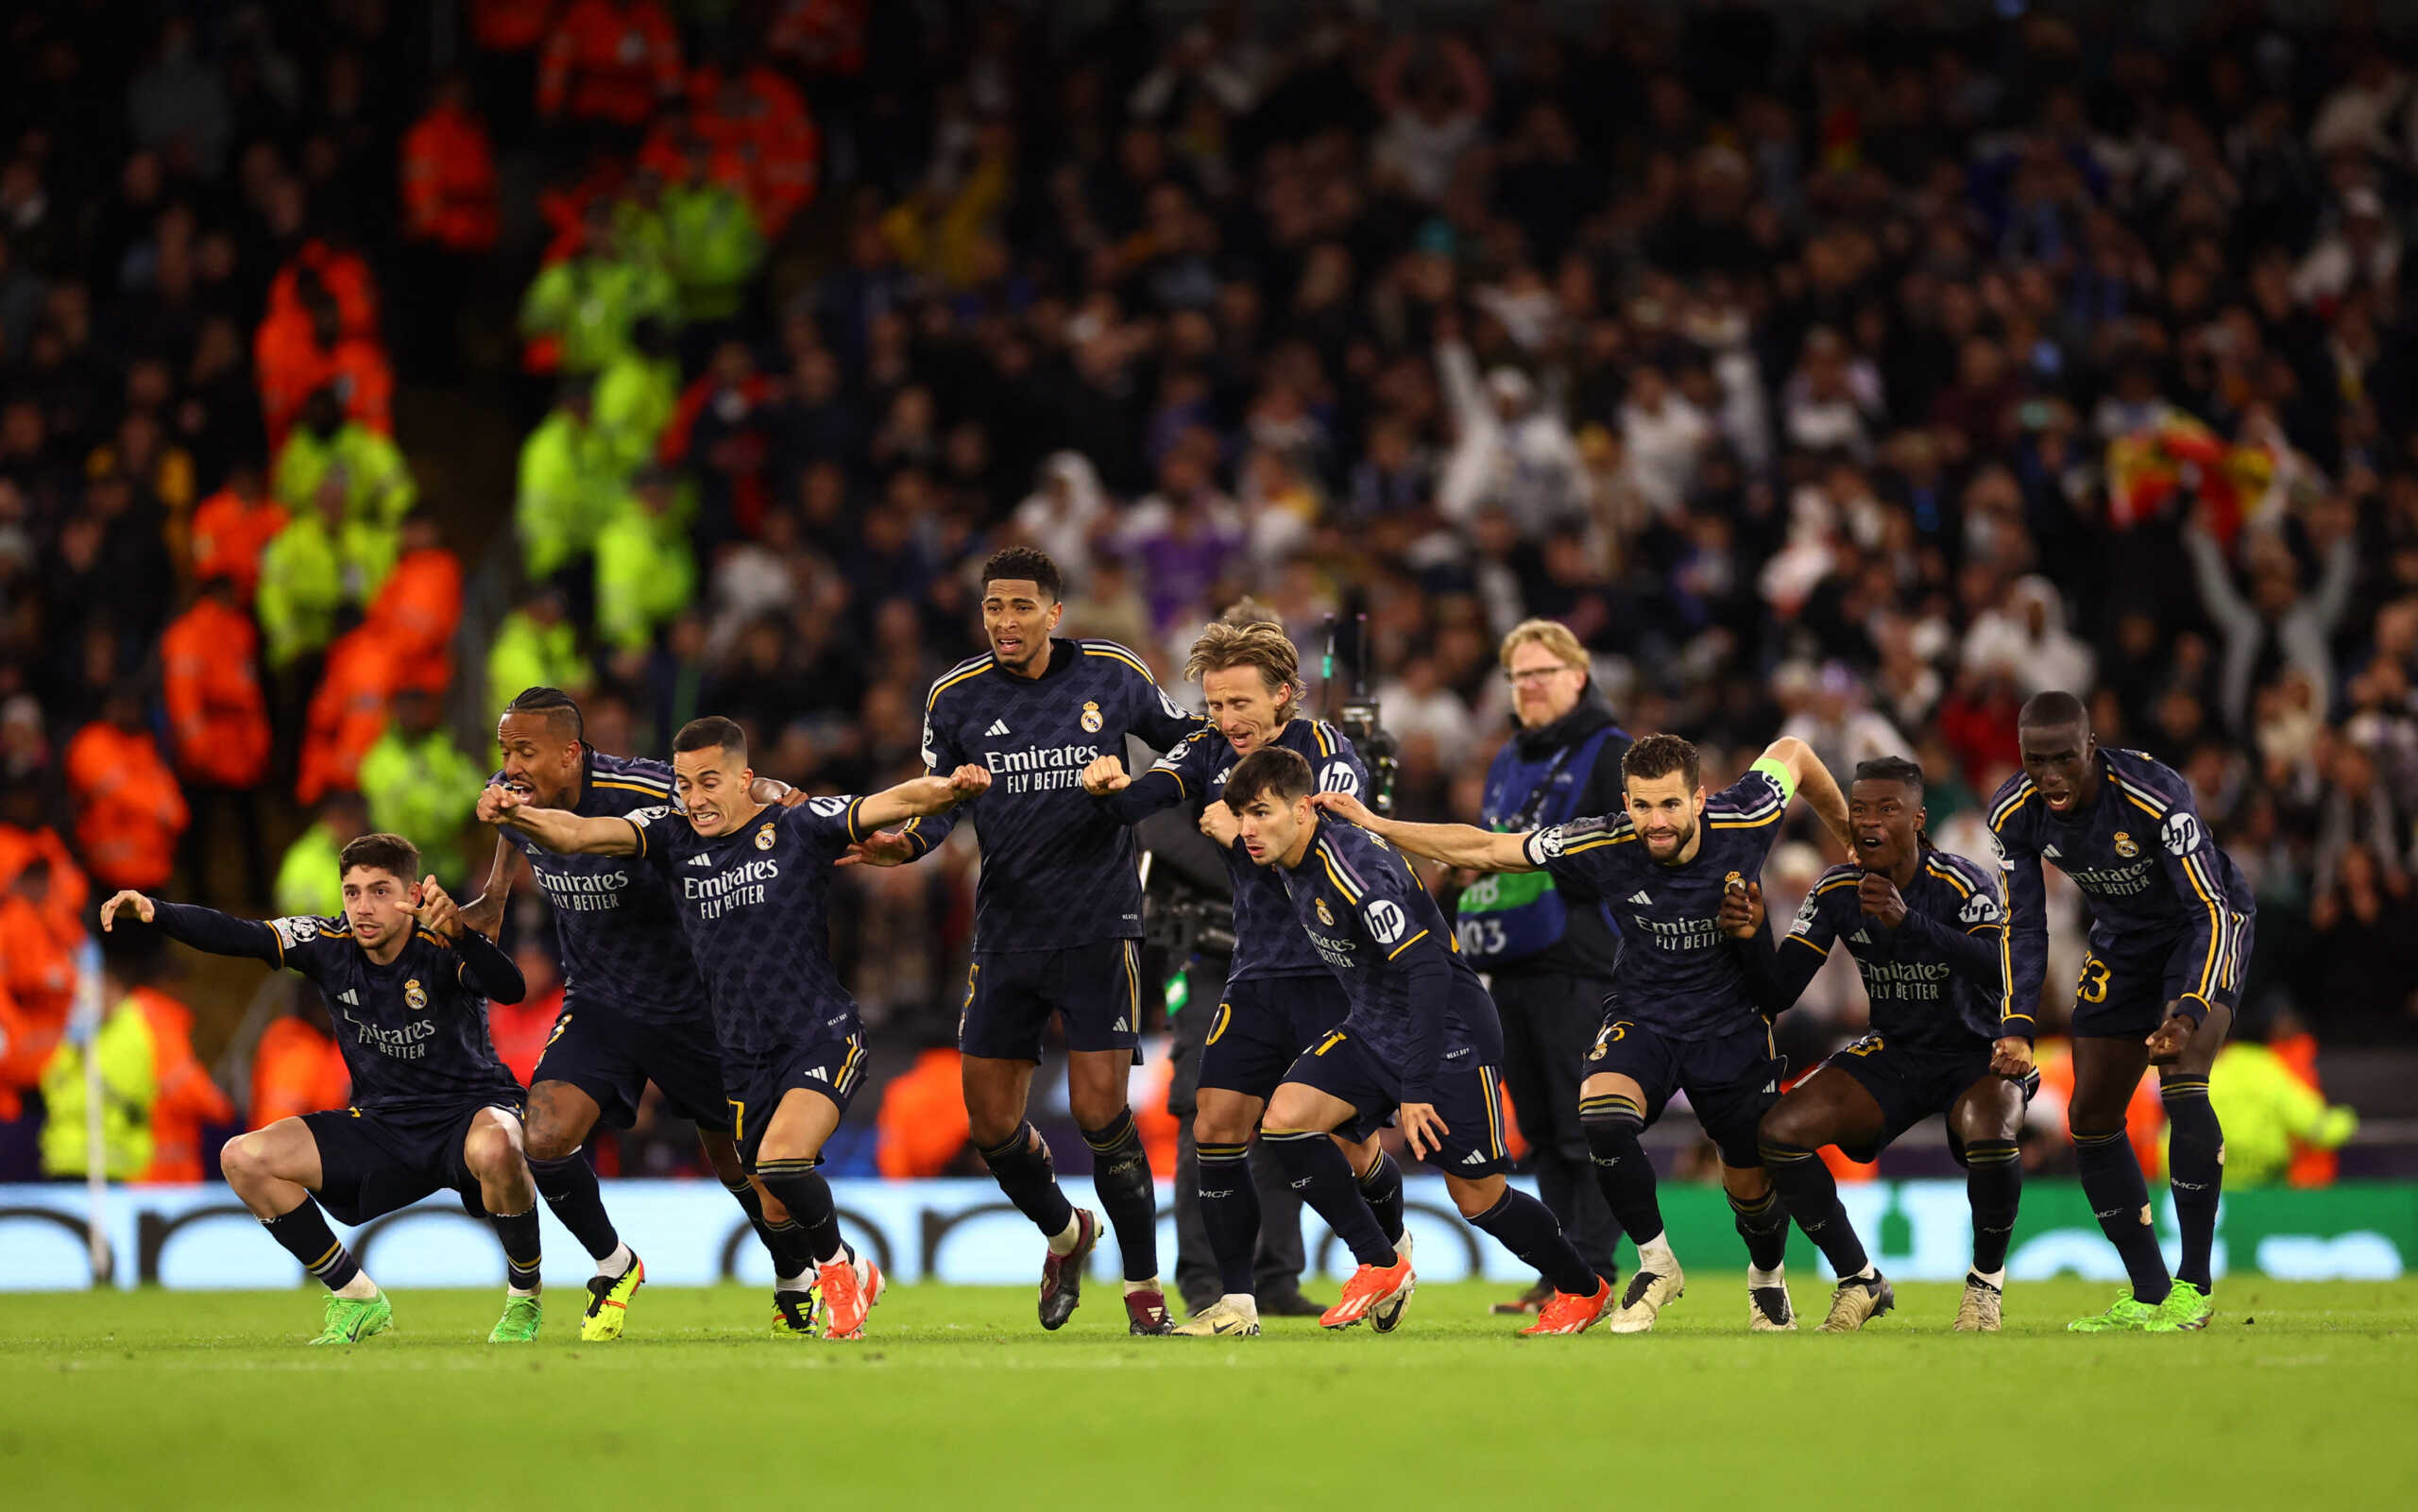 Μάντσεστερ Σίτι – Ρεάλ Μαδρίτης 3-4 στα πέναλτι (1-1 παράταση): «Βασιλική» πρόκριση για τα ημιτελικά του Champions League στην Αγγλία